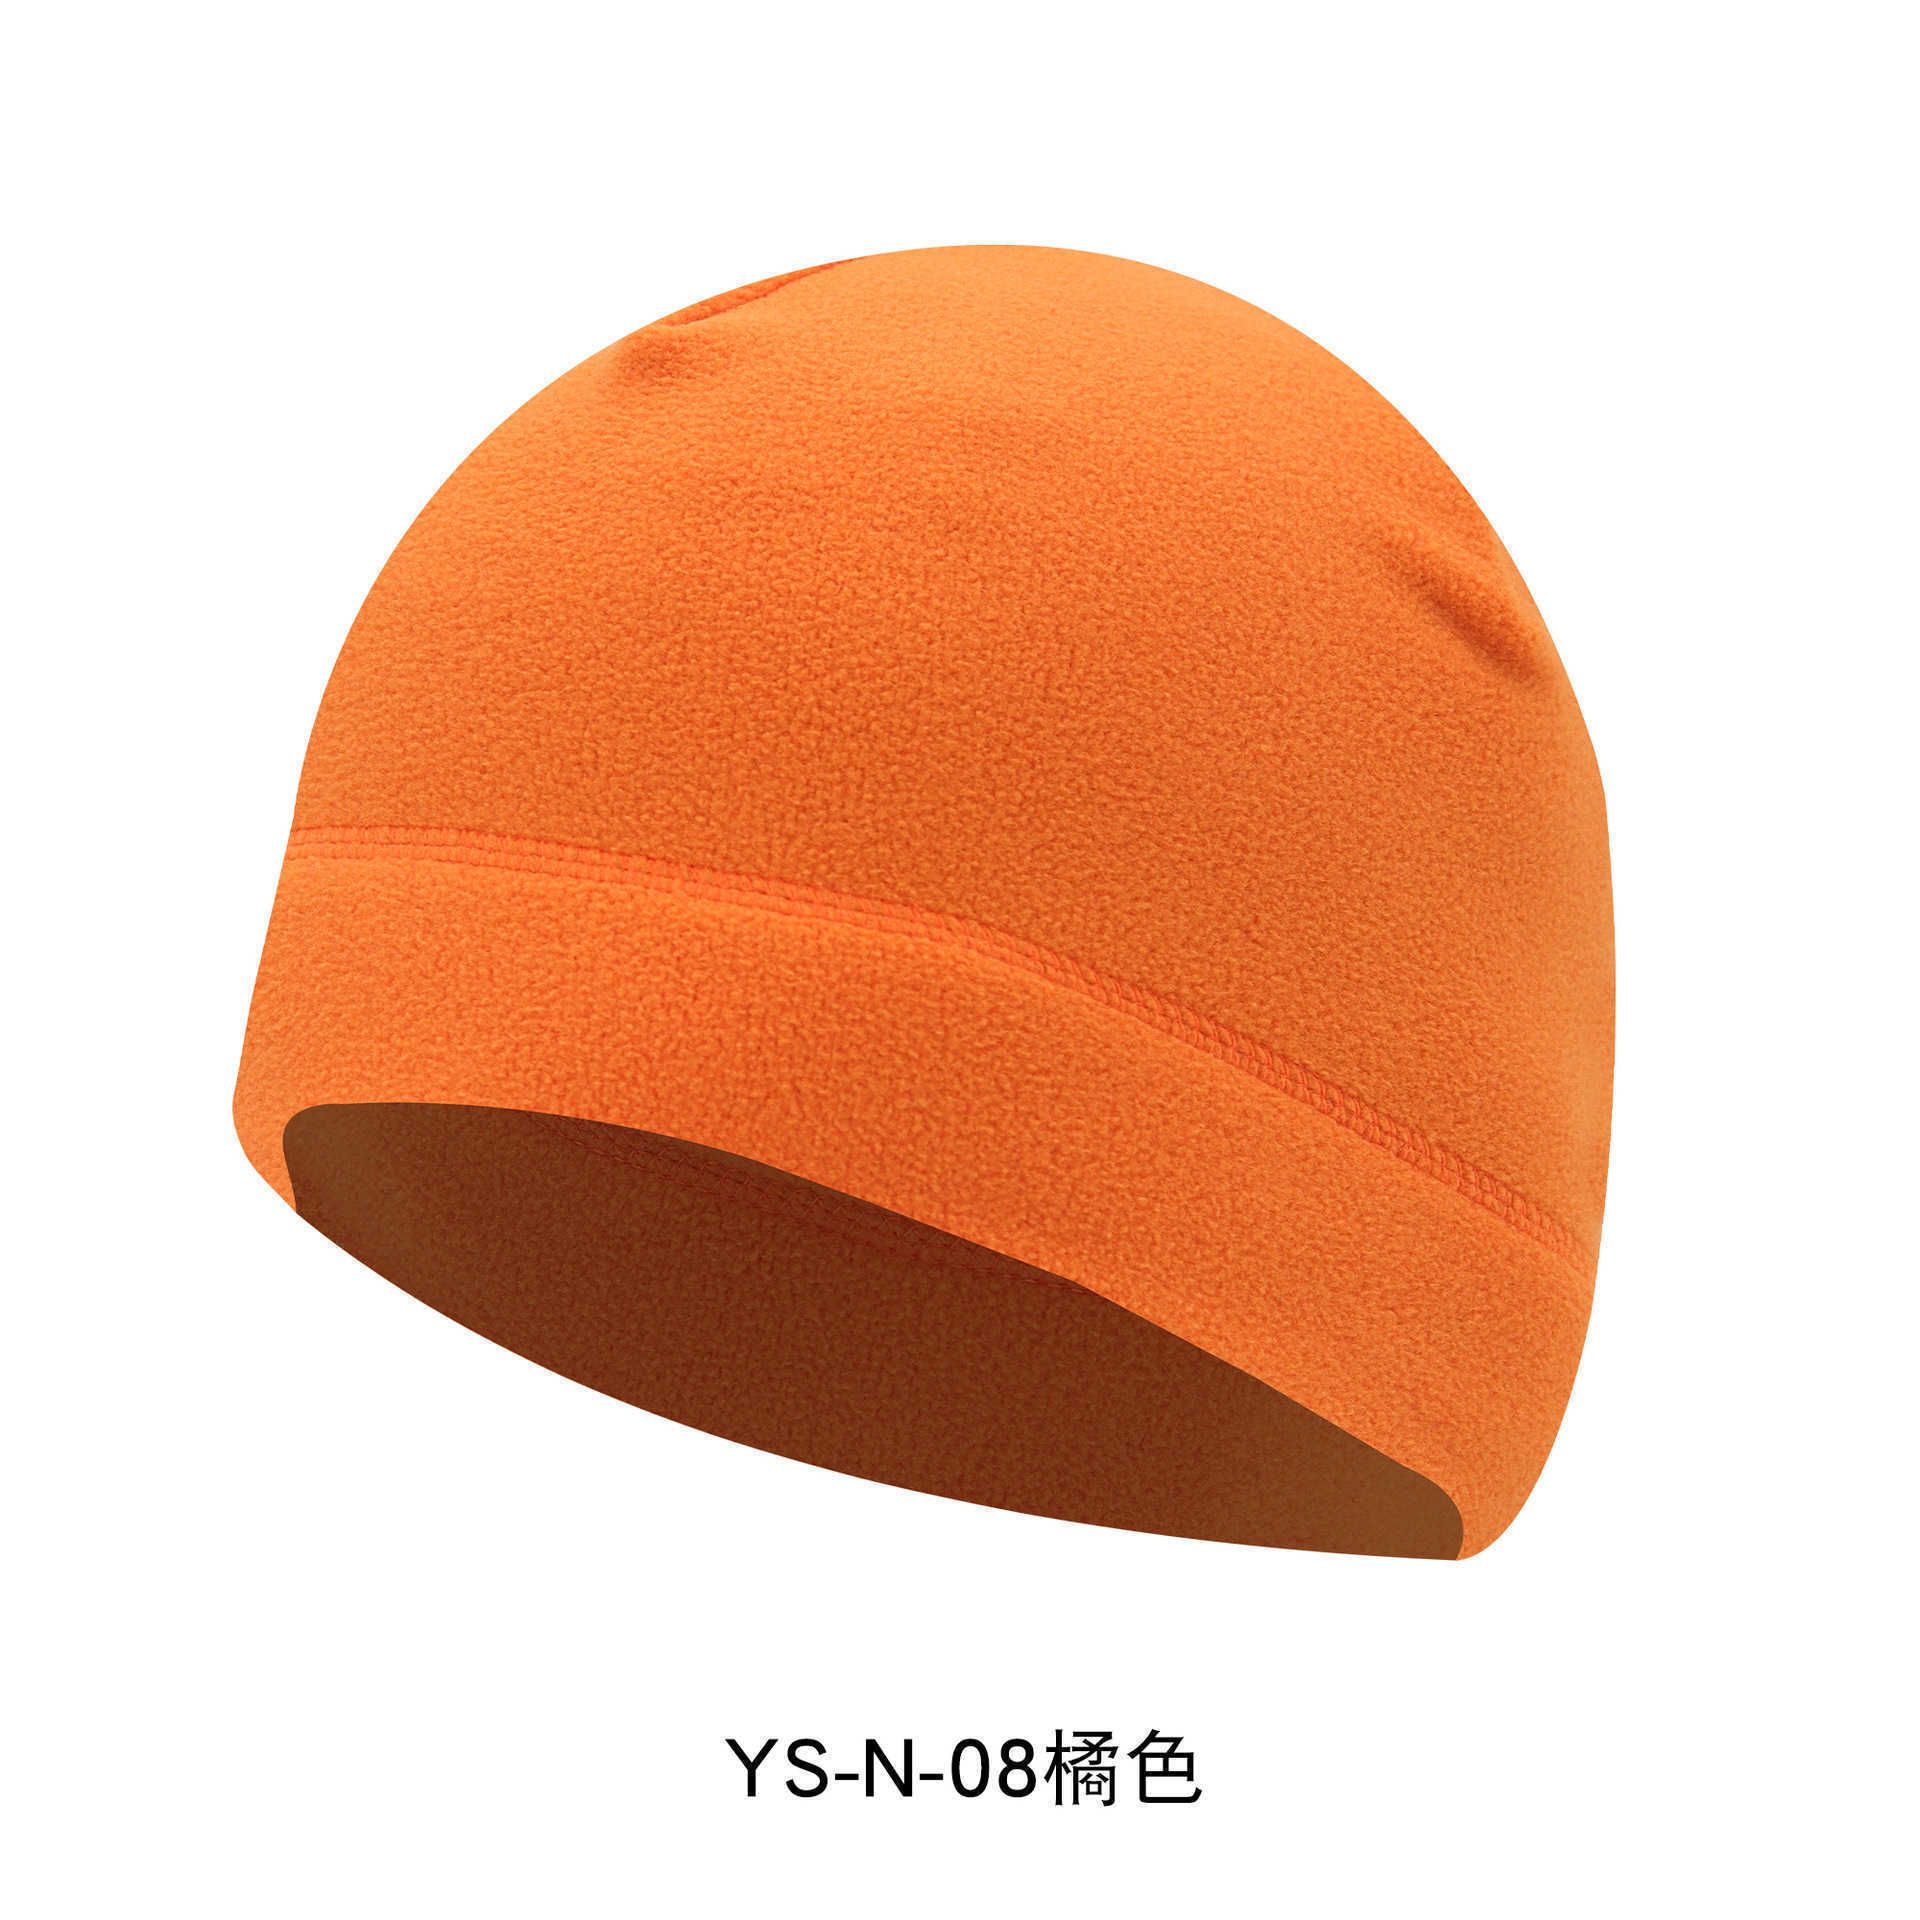 YS-N-08 Orange